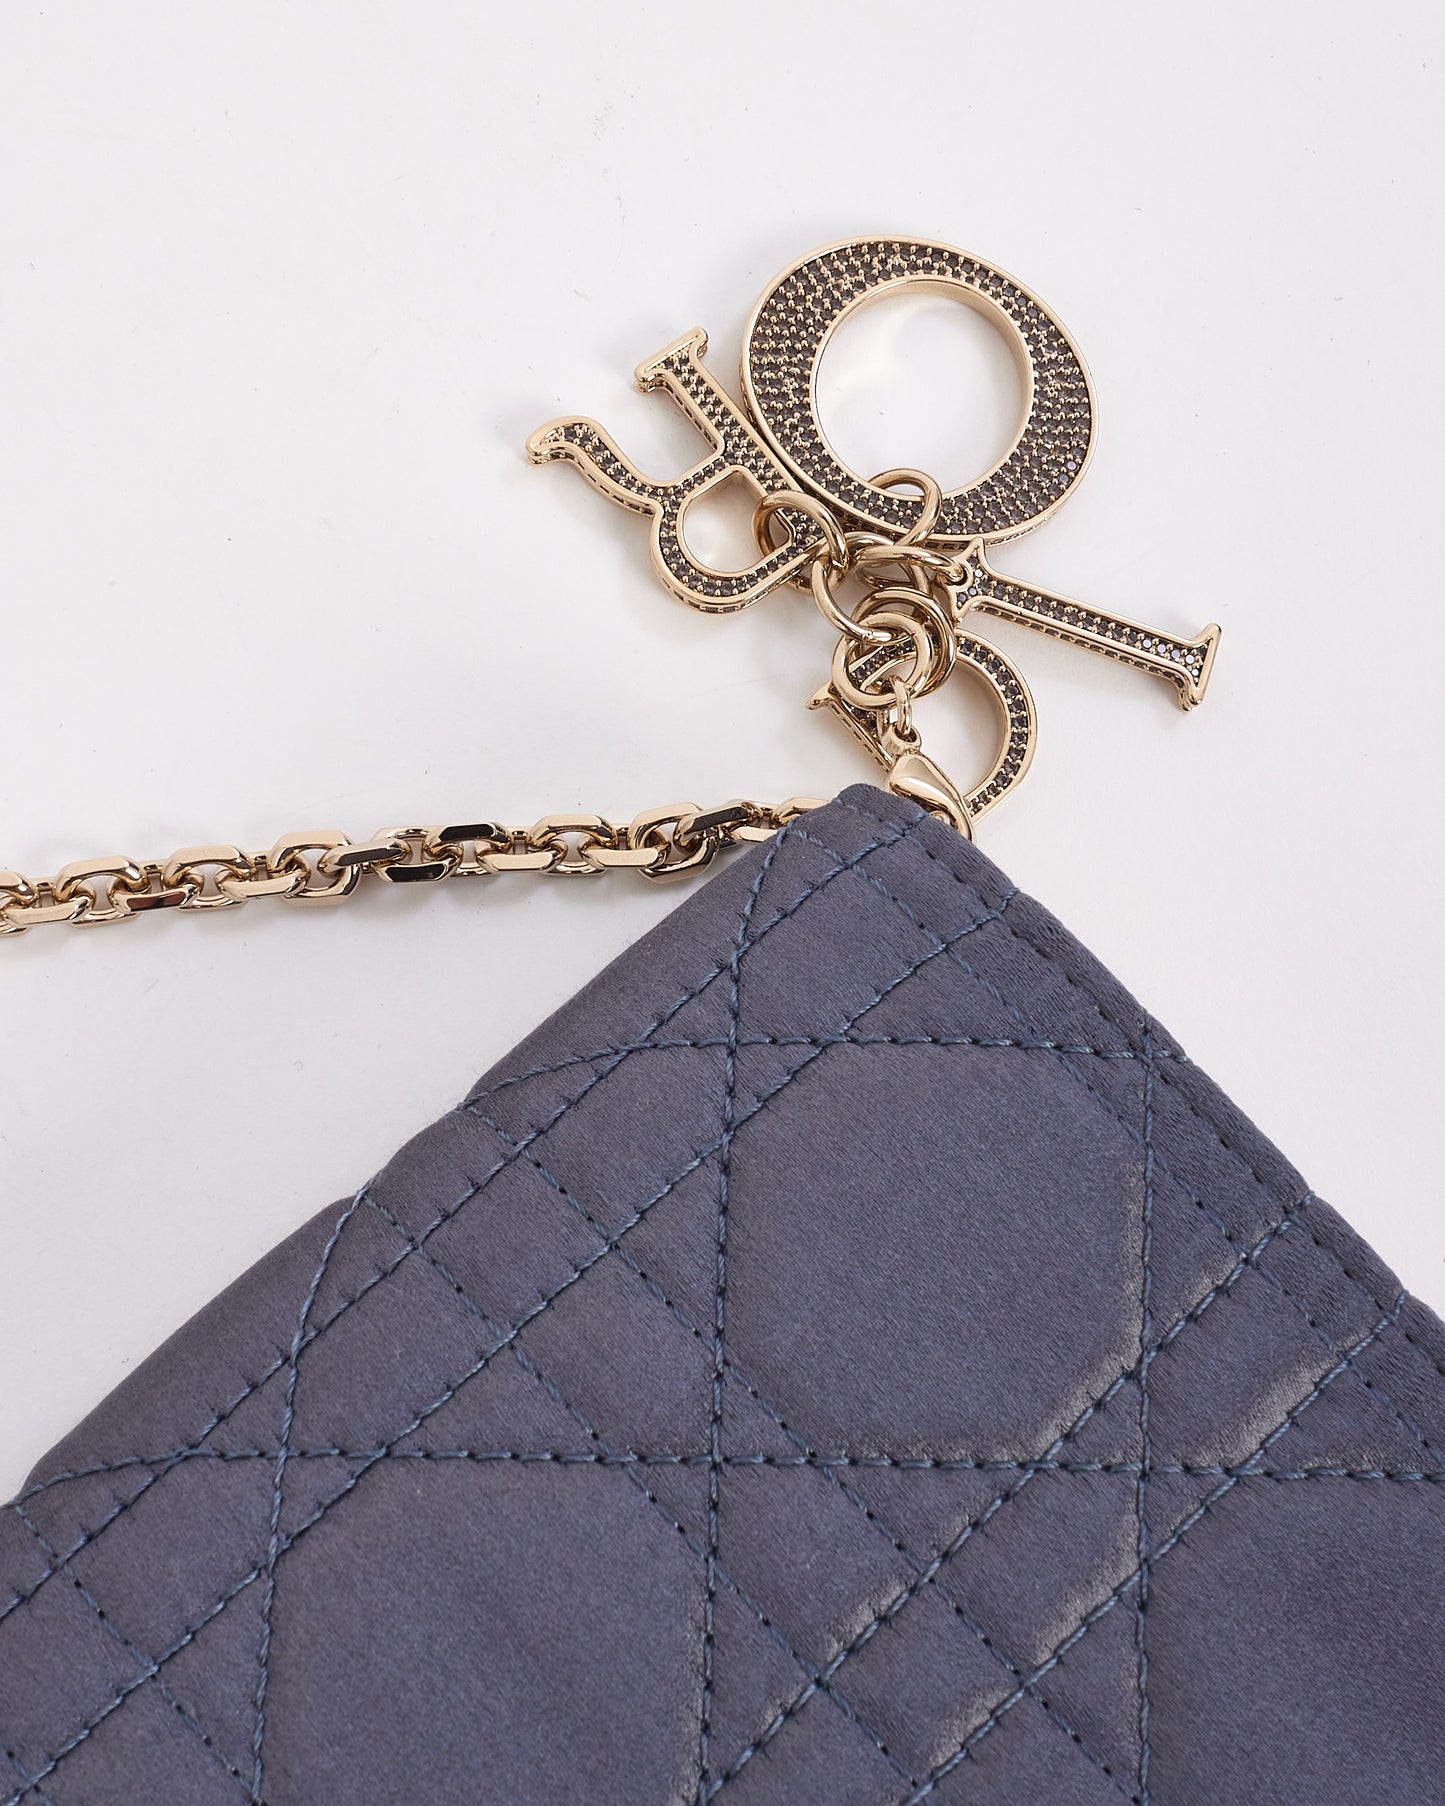 Portefeuille pochette Lady Dior en satin bleu Dior sur chaîne